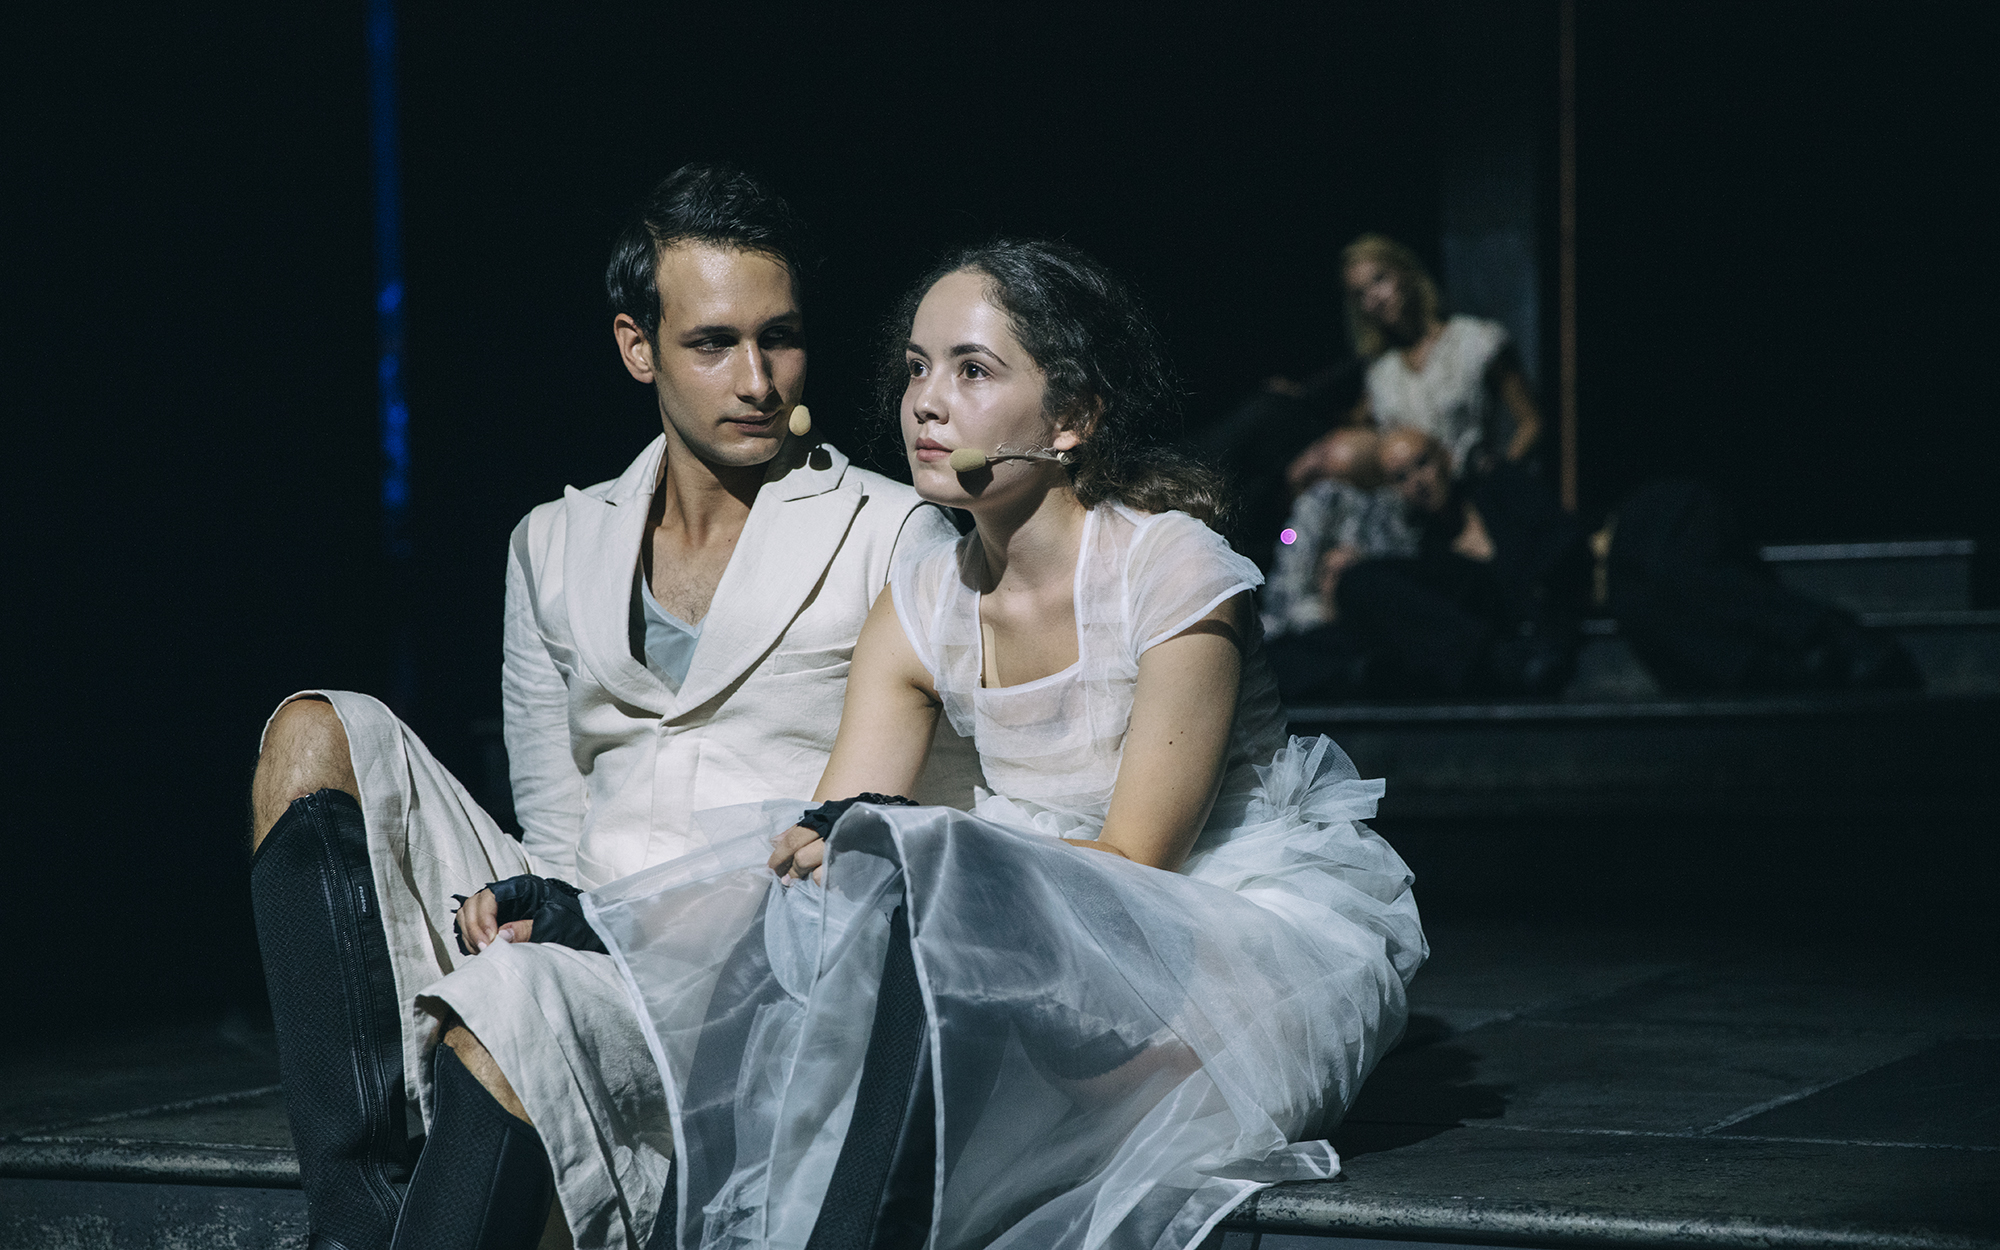 Mladi Kalaf (Voranc Boh) sedi na stopnicah in gleda Mlado Turandot (Lara Wolf), ki sedi poleg njega in zre v daljavo. Avtor fotografije: Peter Giodani.